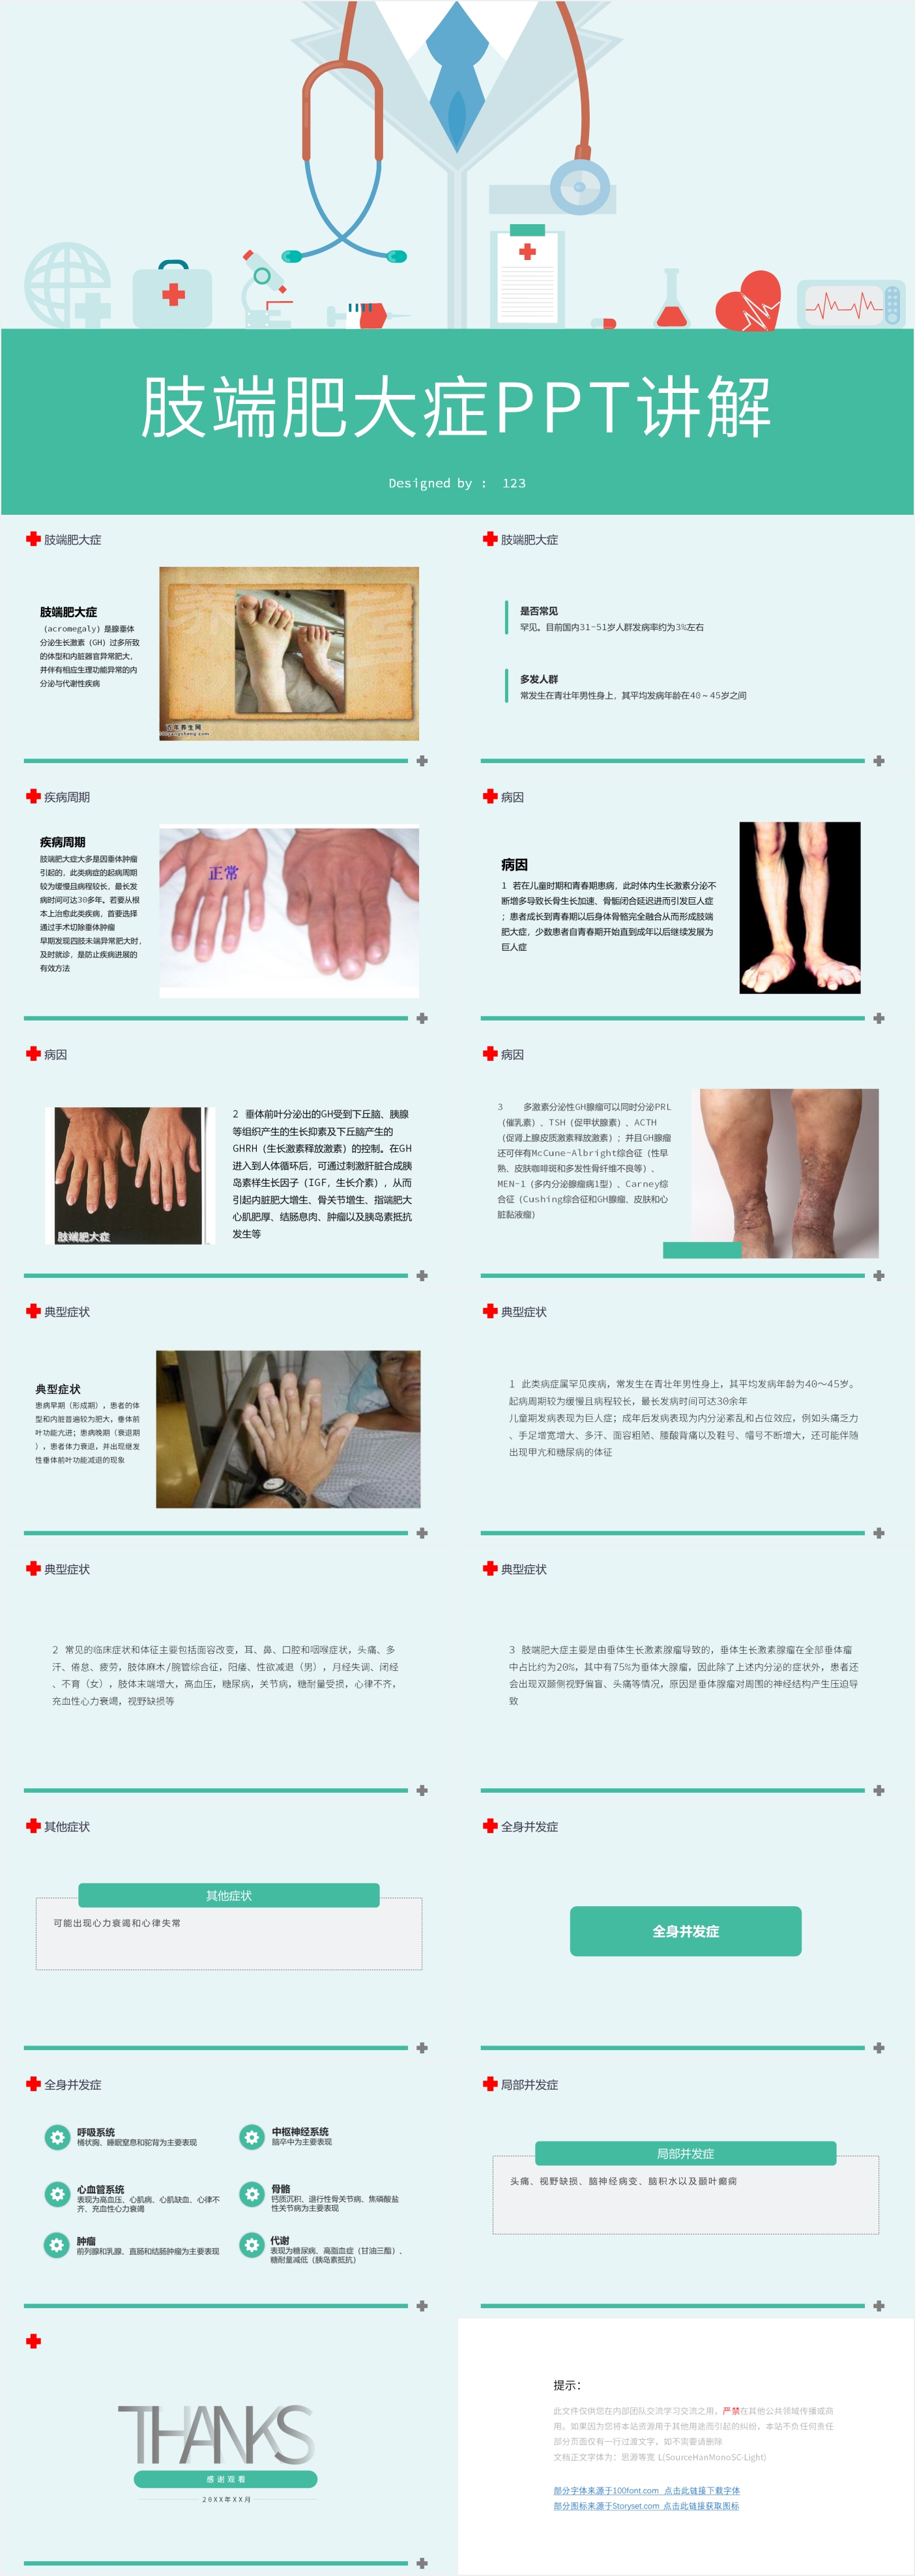 共识摘要 | 肢端肥大症诊治中国专家共识(2020版)_治疗